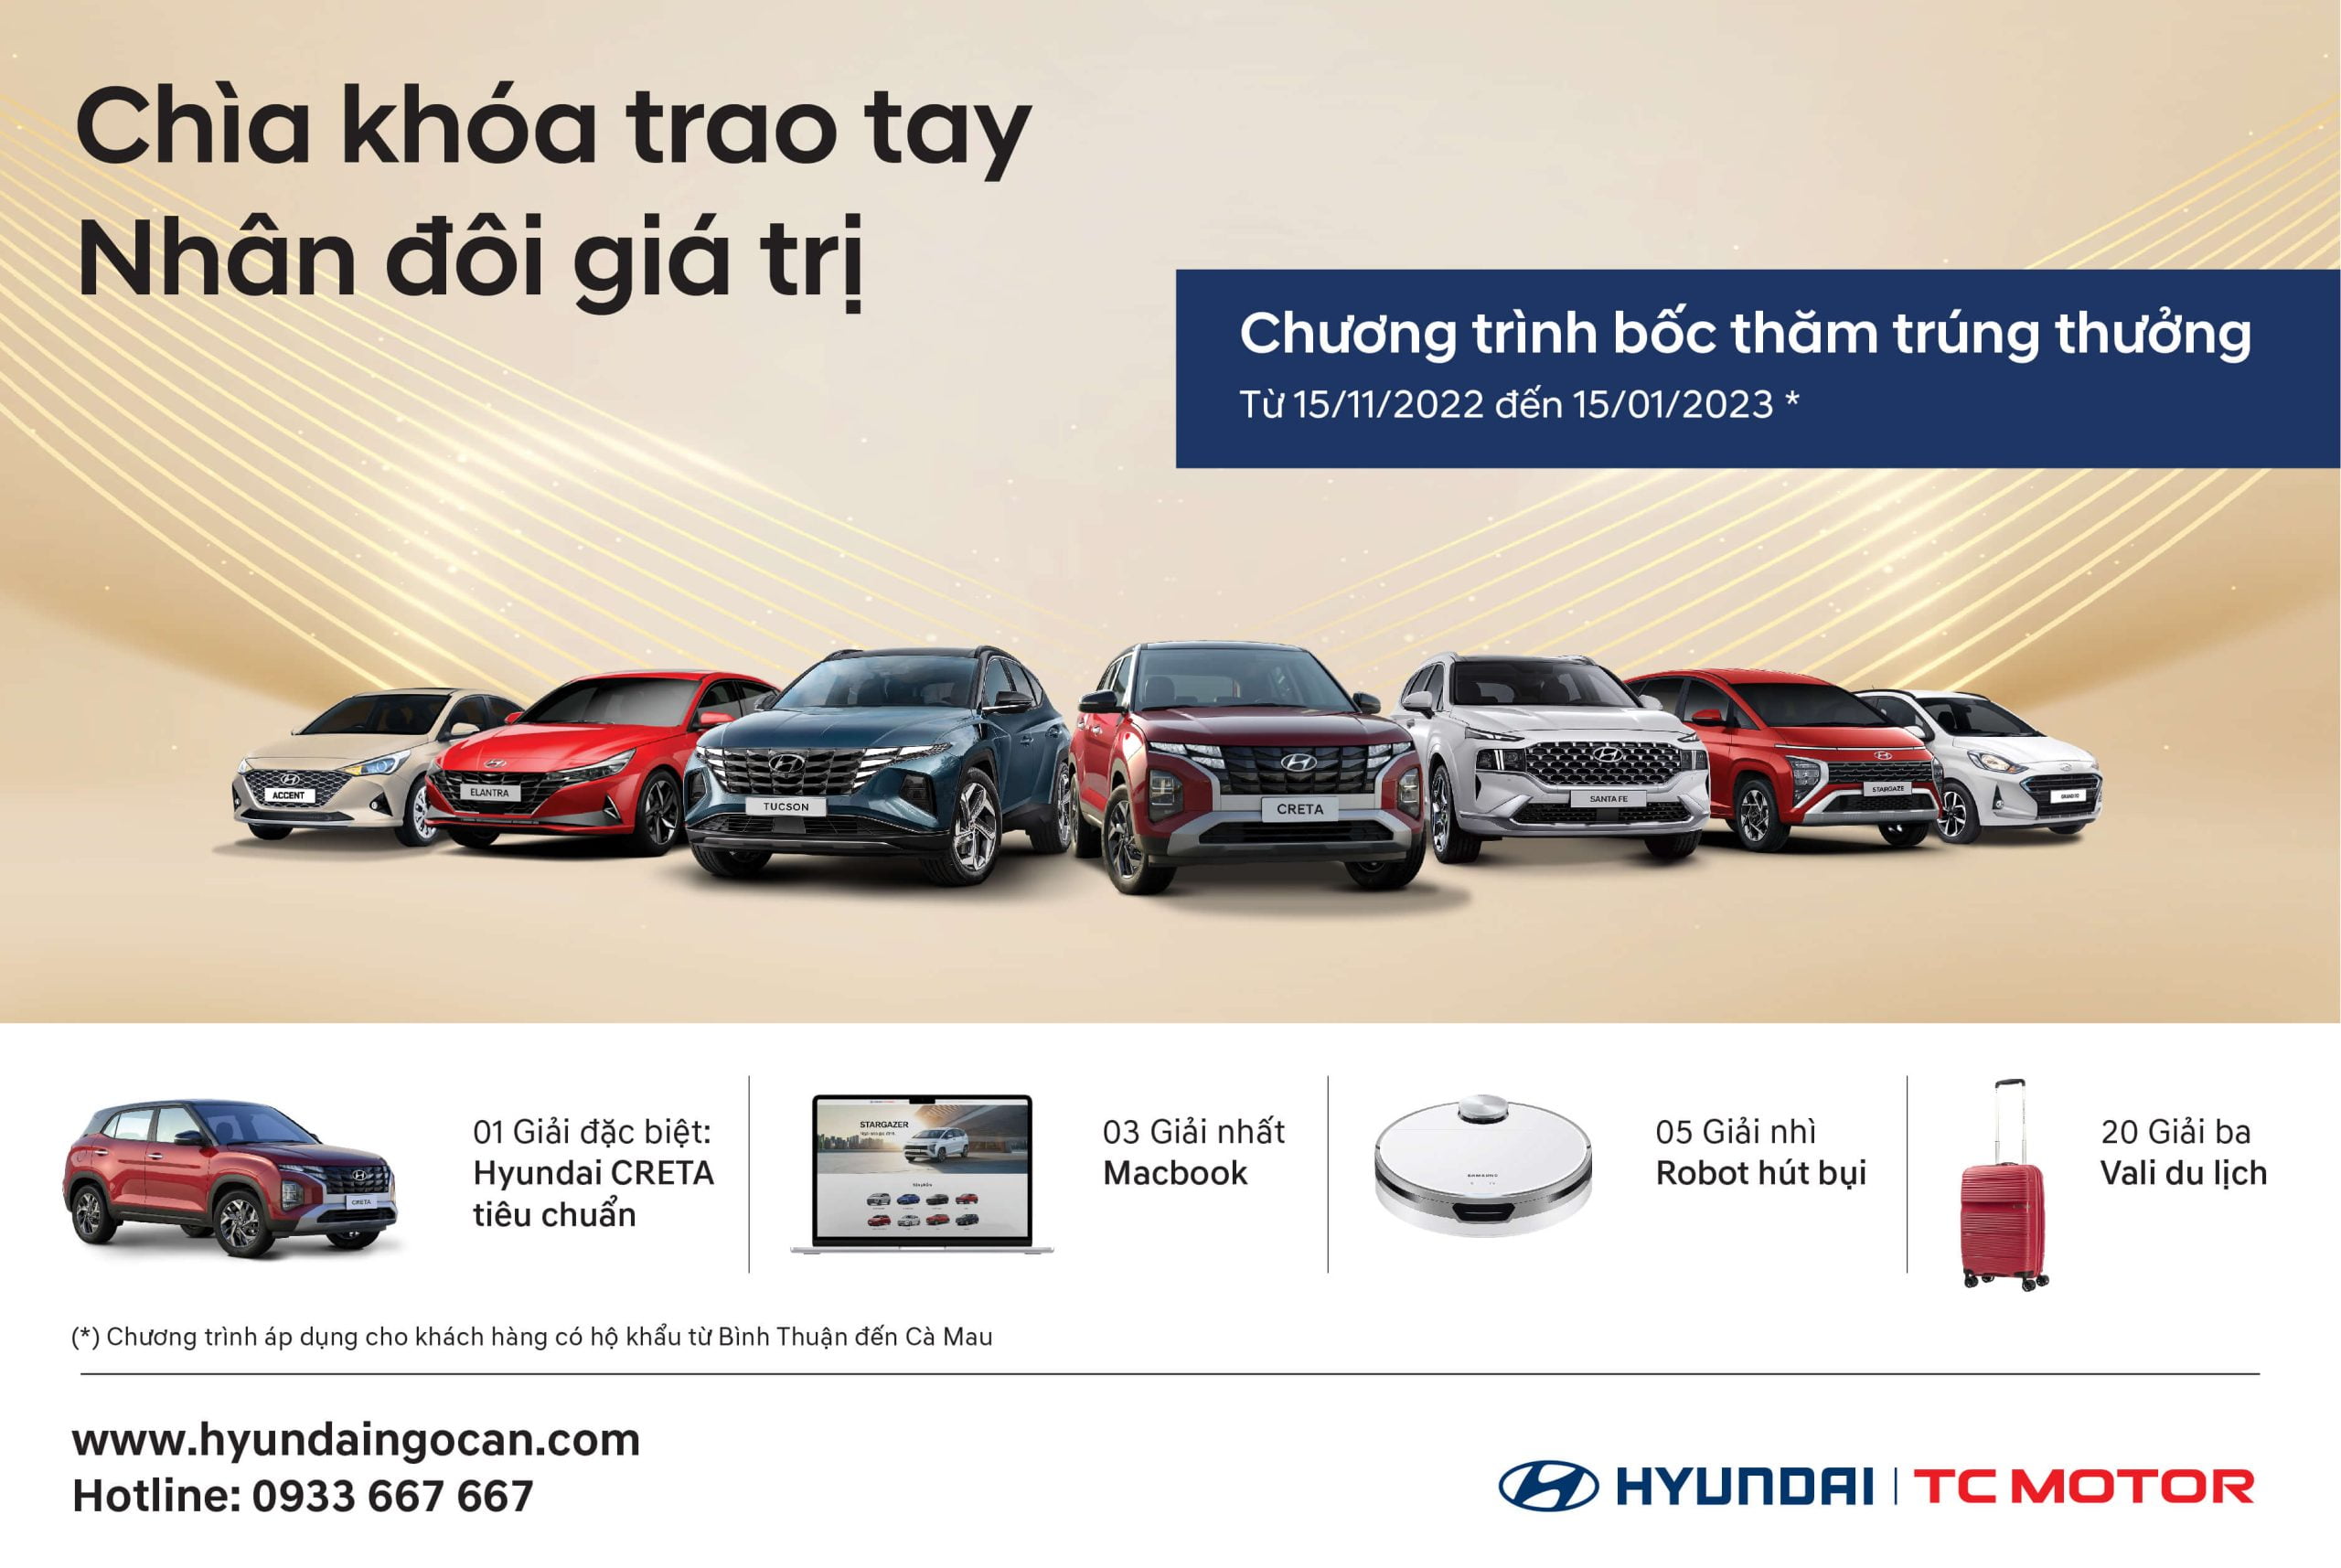 Xe xe hơi Hyundai với ưu điểm yếu kém gì